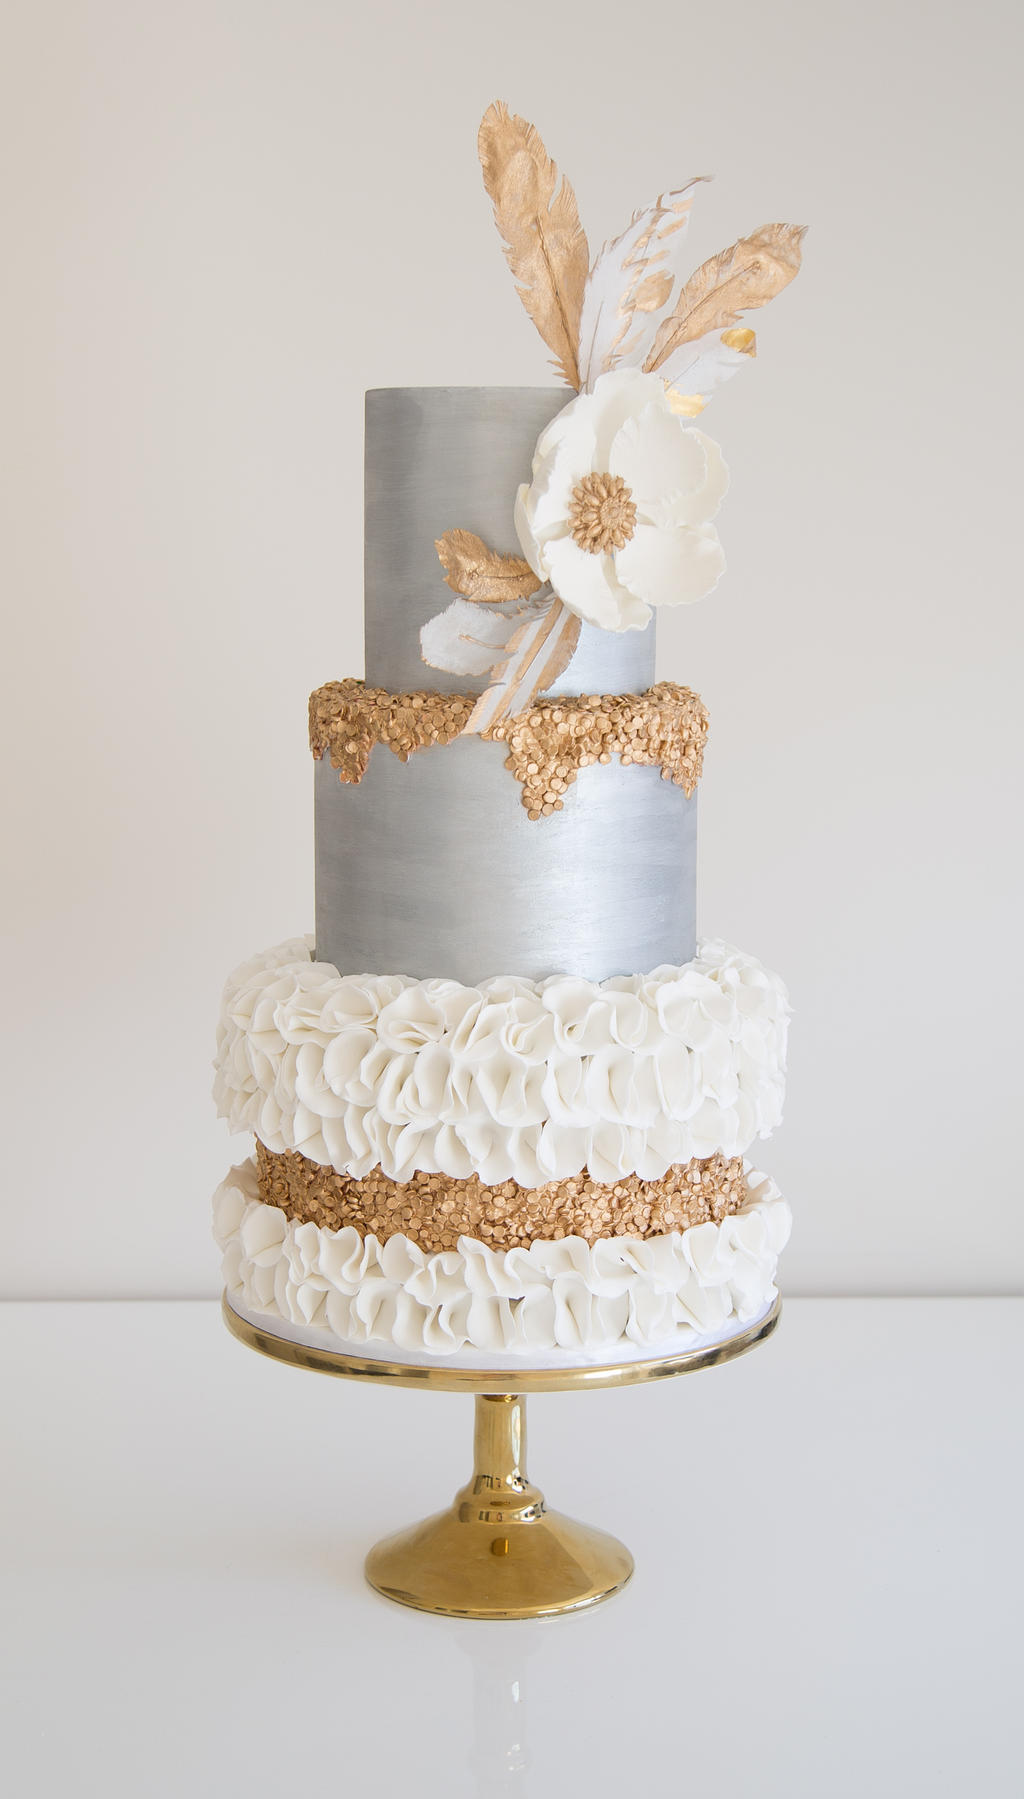  Wedding Cake By Bite Me Bakery Decorating Ideas Cake on Pinterest